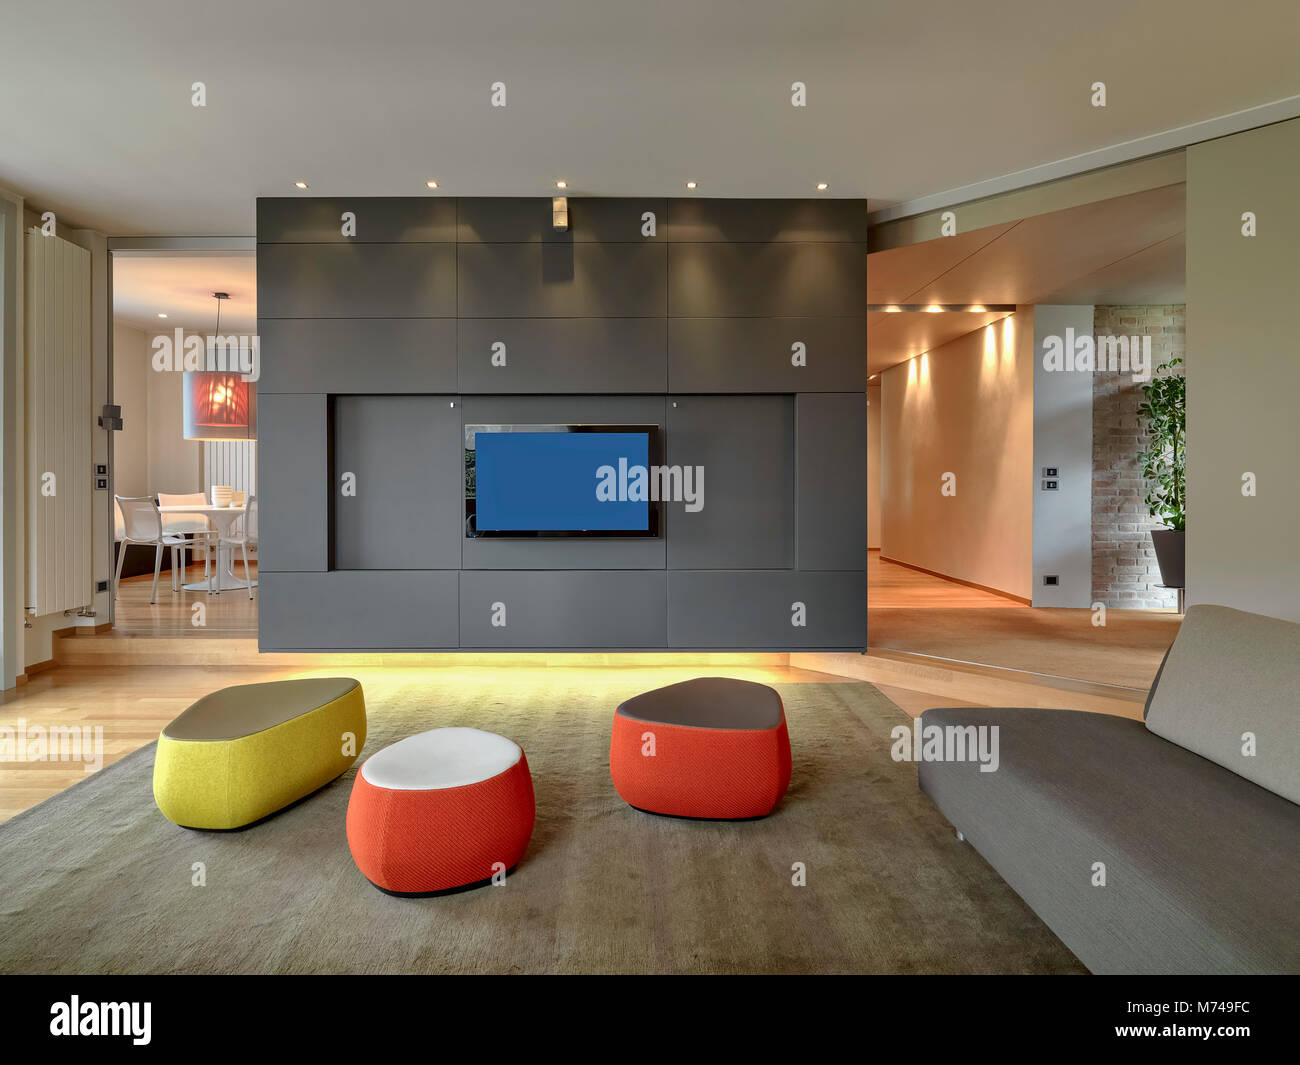 Scatti di interni di un soggiorno moderno con il rosso e il giallo del poggiapiedi, moquette grigio e divano, il pavimento è in legno di tutte si affacciano sul dinin Foto Stock